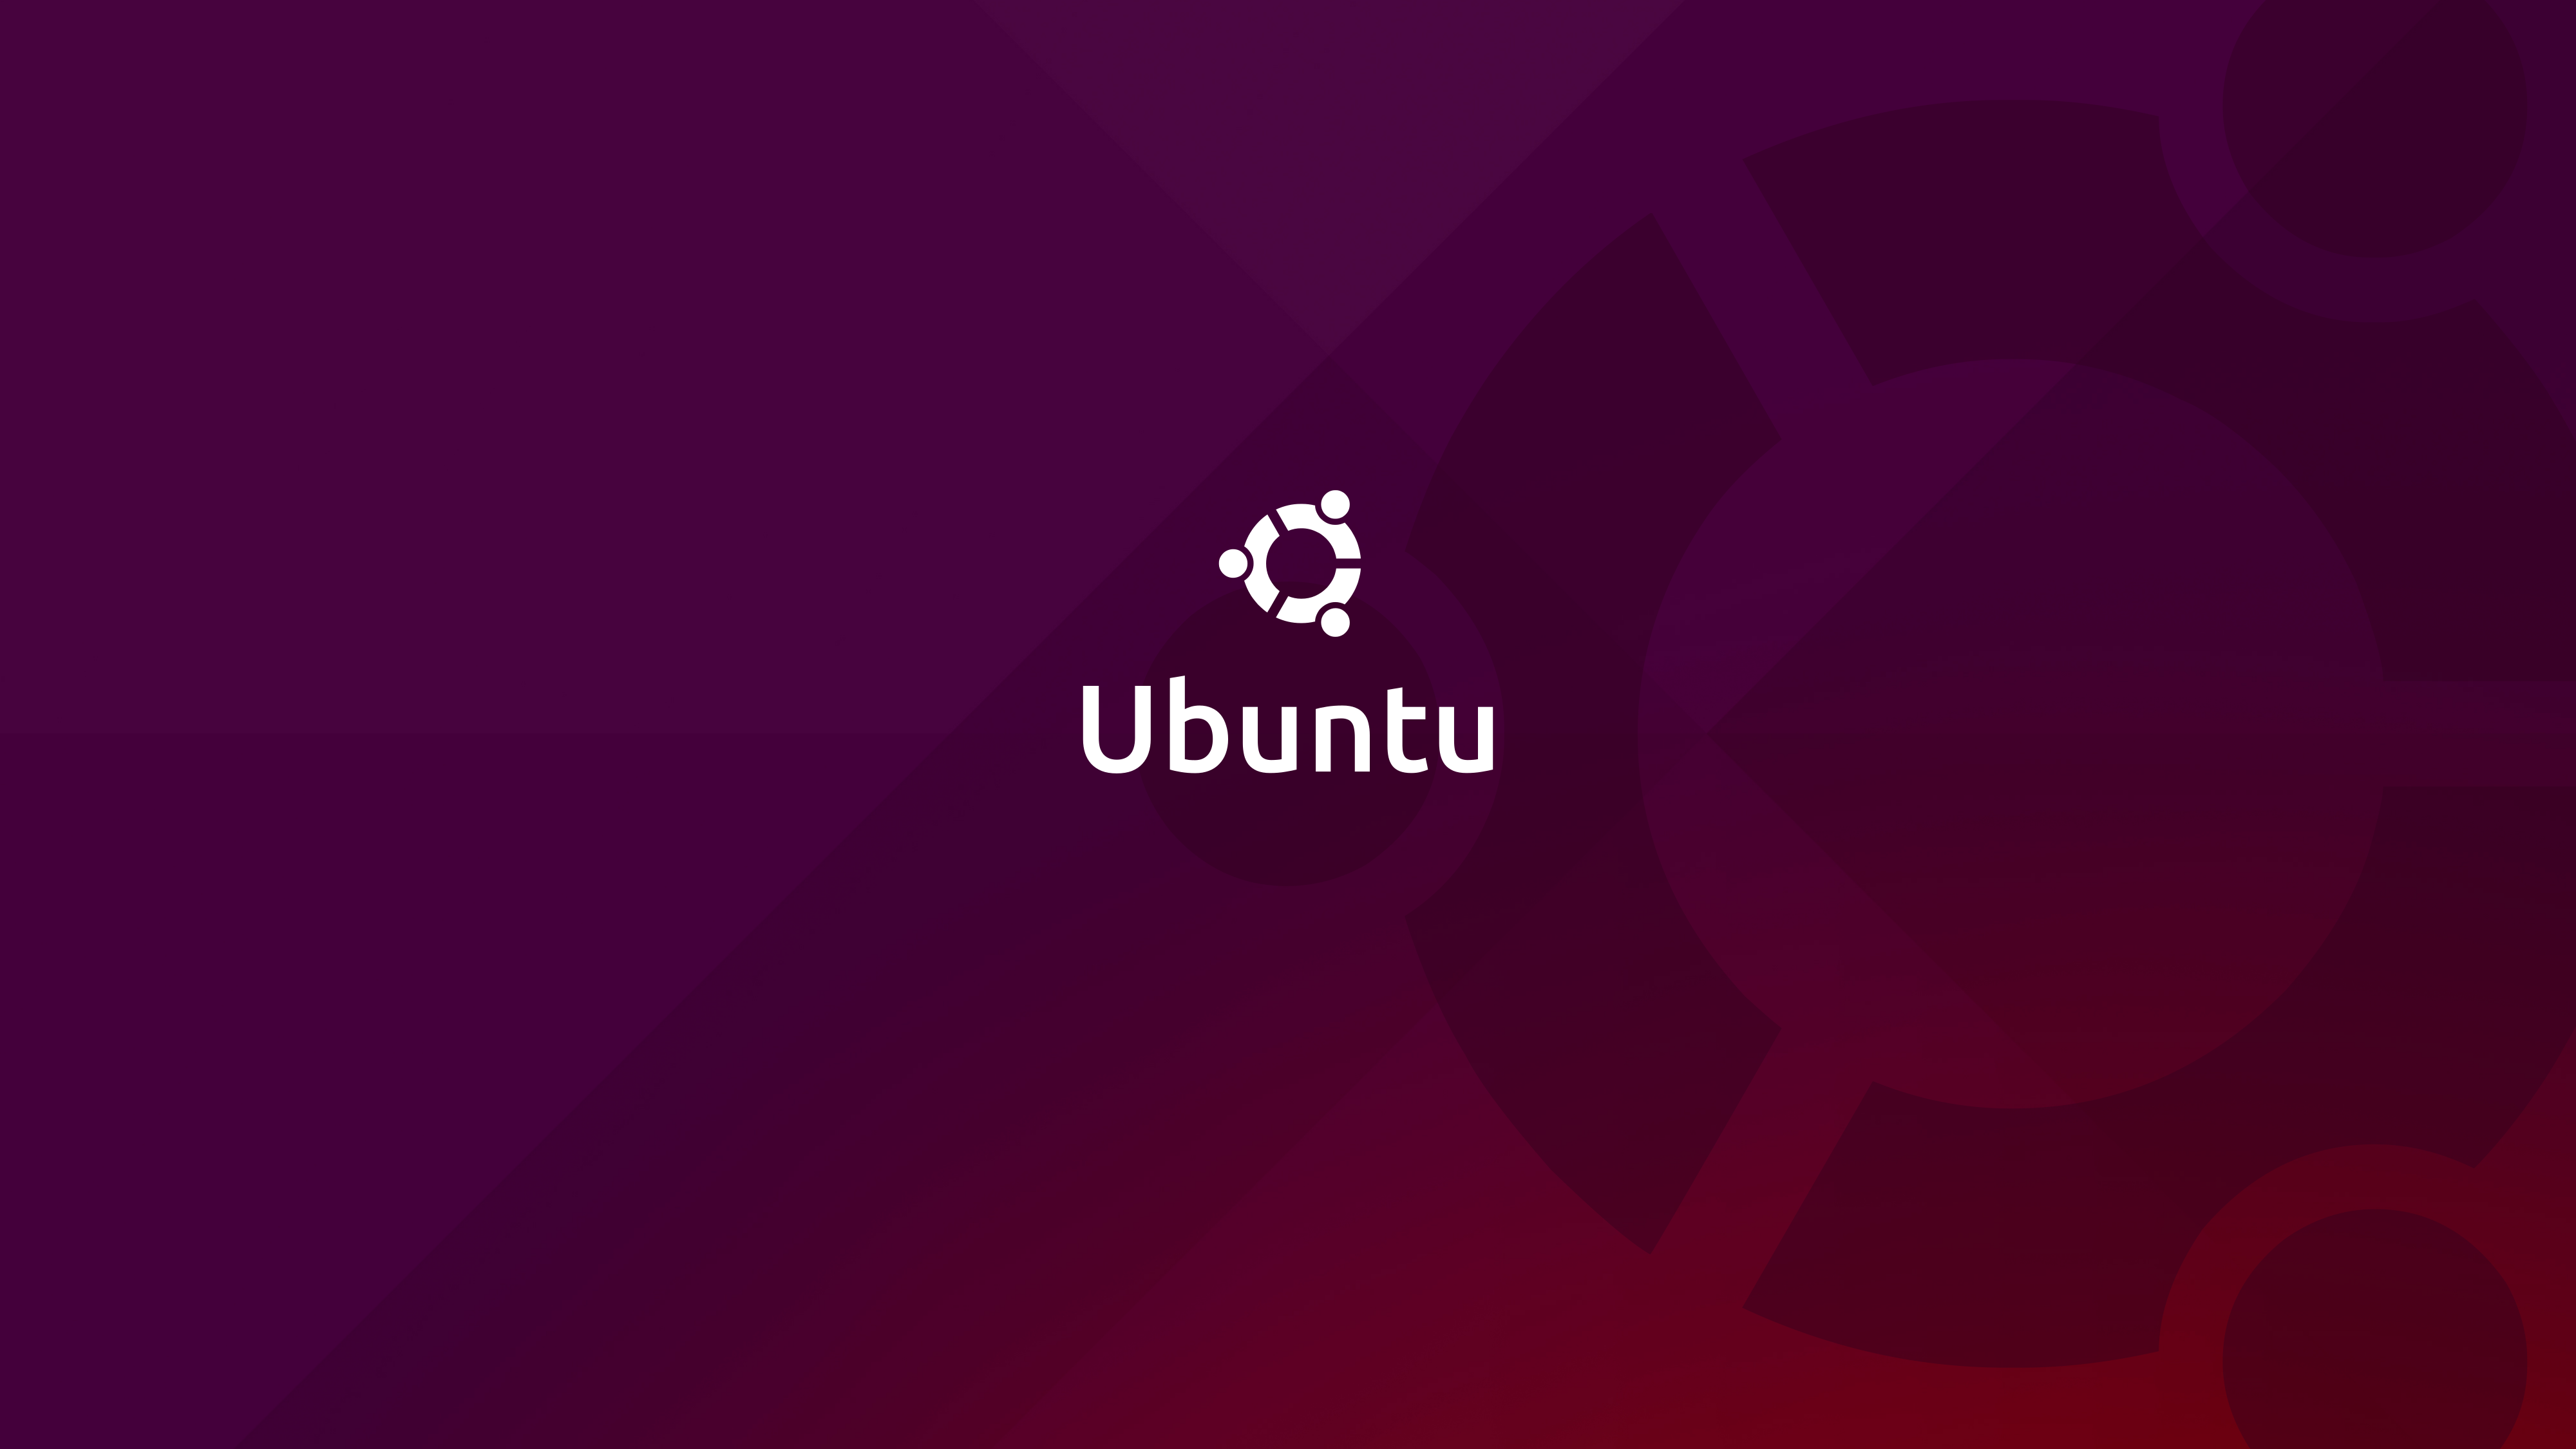 ubuntu wallpaper herunterladen,text,rosa,rot,lila,violett